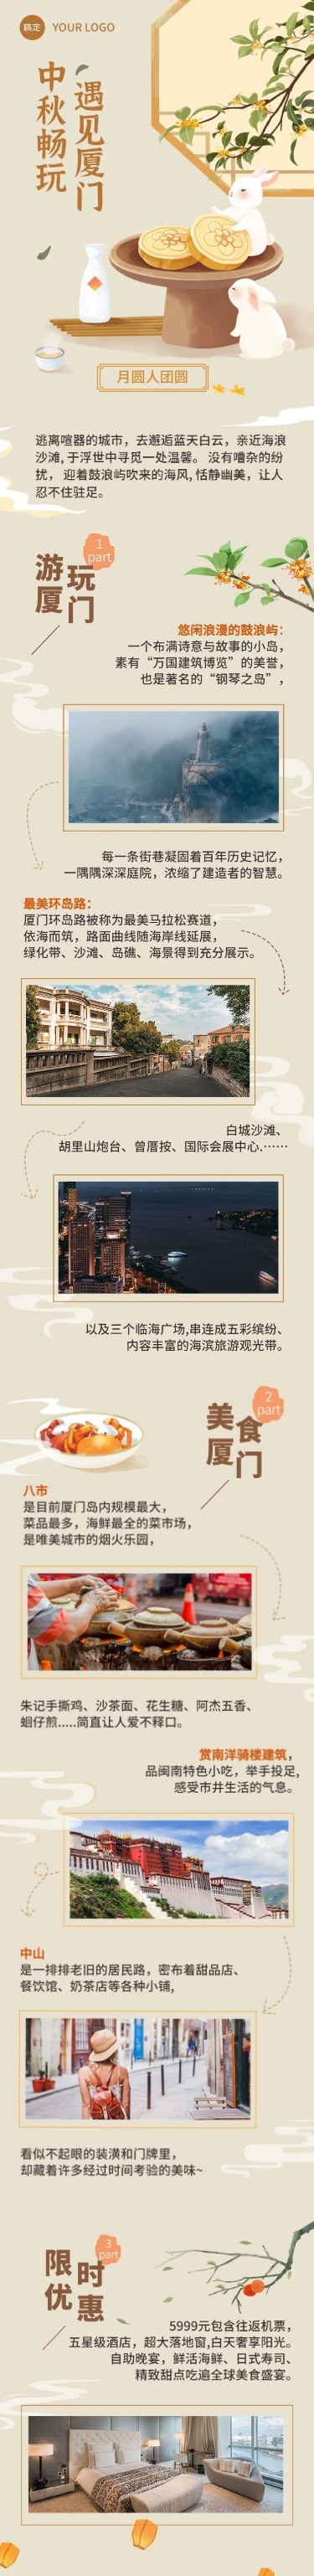 中秋节旅游节日营销水彩风插画文章长图